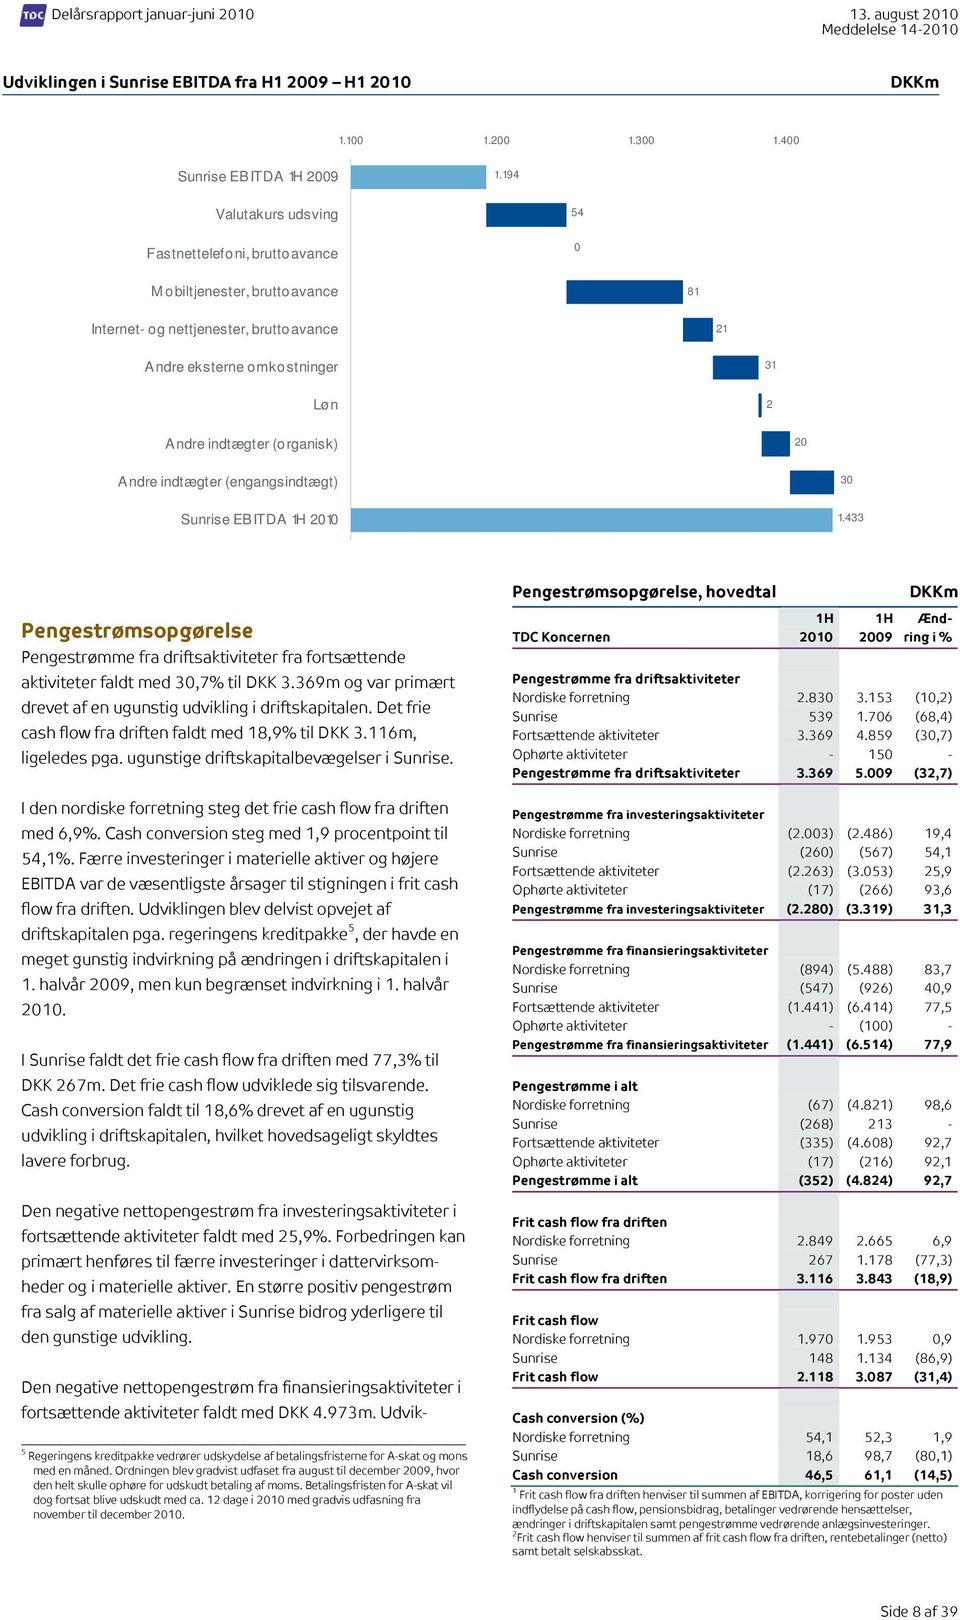 20 Andre indtægter (engangsindtægt) 30 Sunrise EBITDA 2010 1.433 Pengestrømsopgørelse Pengestrømme fra driftsaktiviteter fra fortsættende aktiviteter faldt med 30,7% til DKK 3.